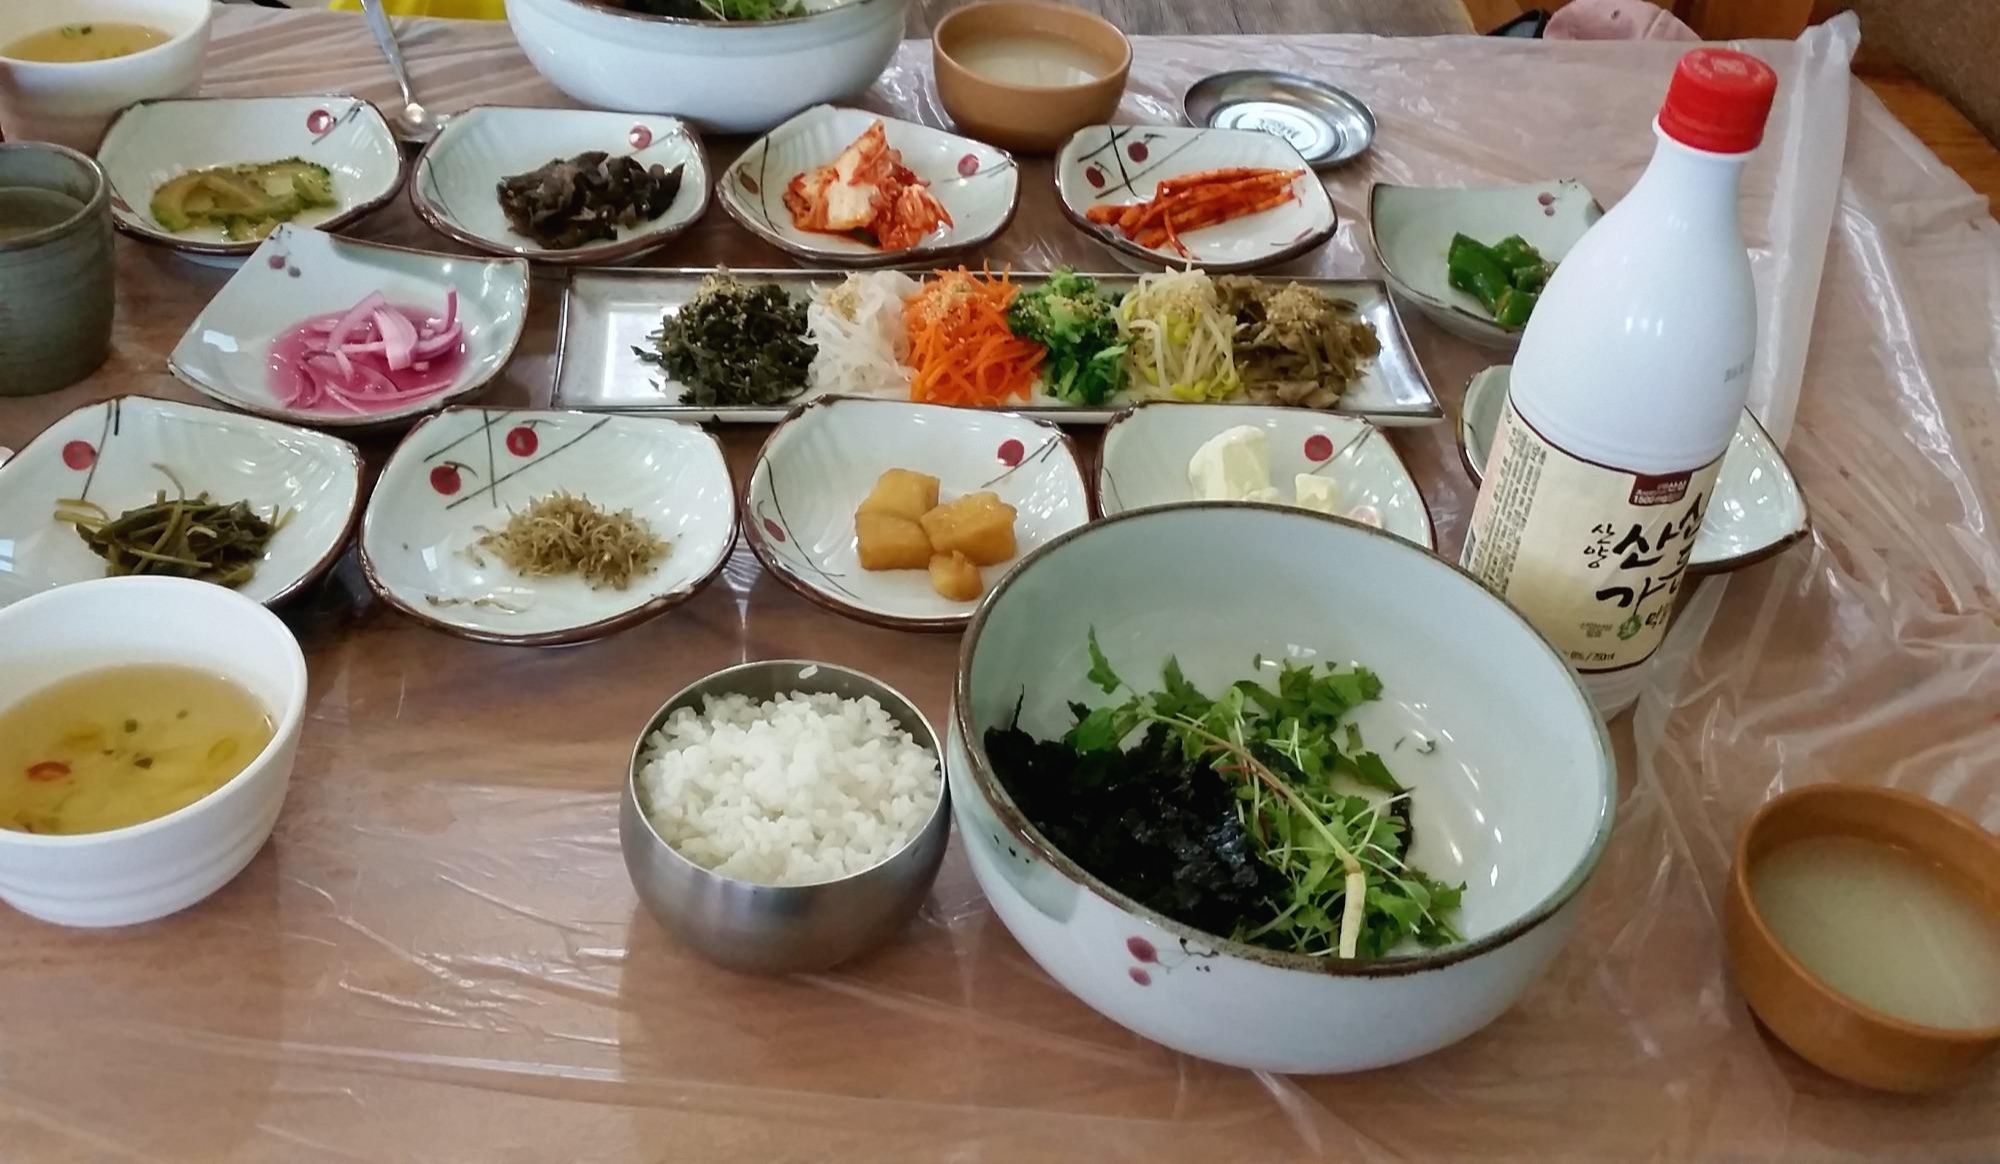 산삼 비빔밥과 막걸리